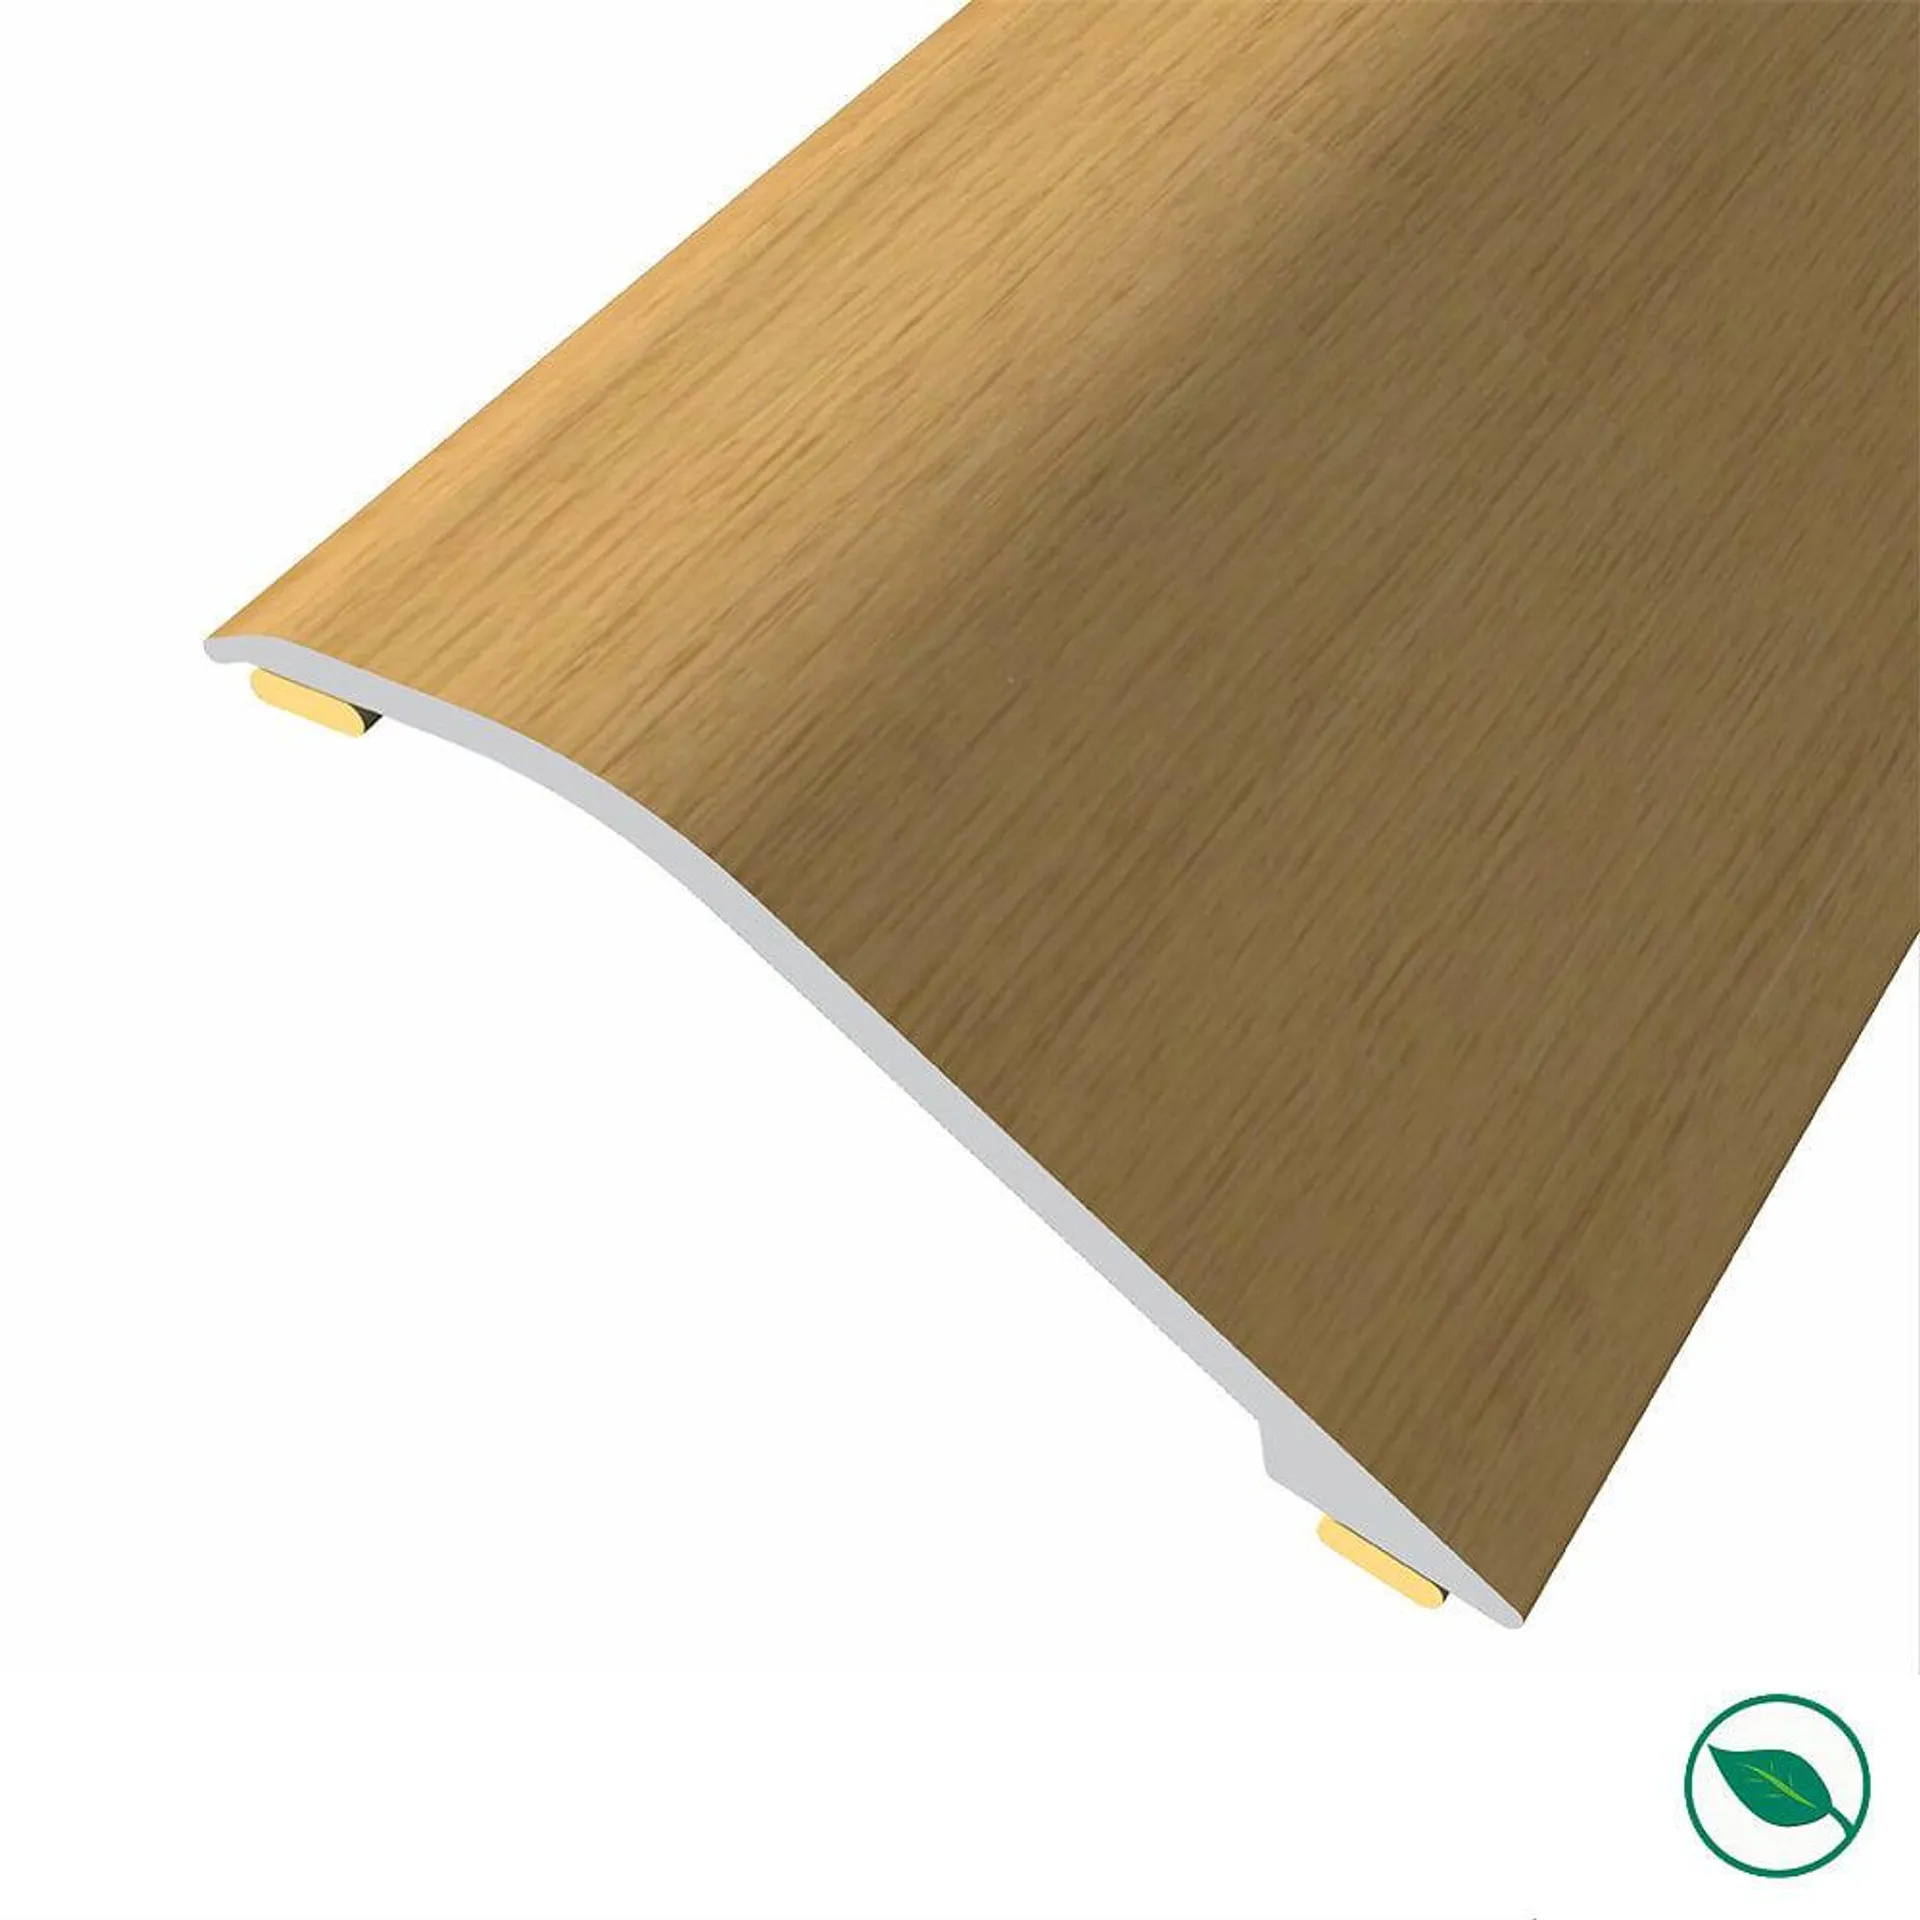 Barre de seuil adhésive différence niveau alu replaqué chêne vernis mat Lg 135cm x lg 4,5cm ht2,3mm